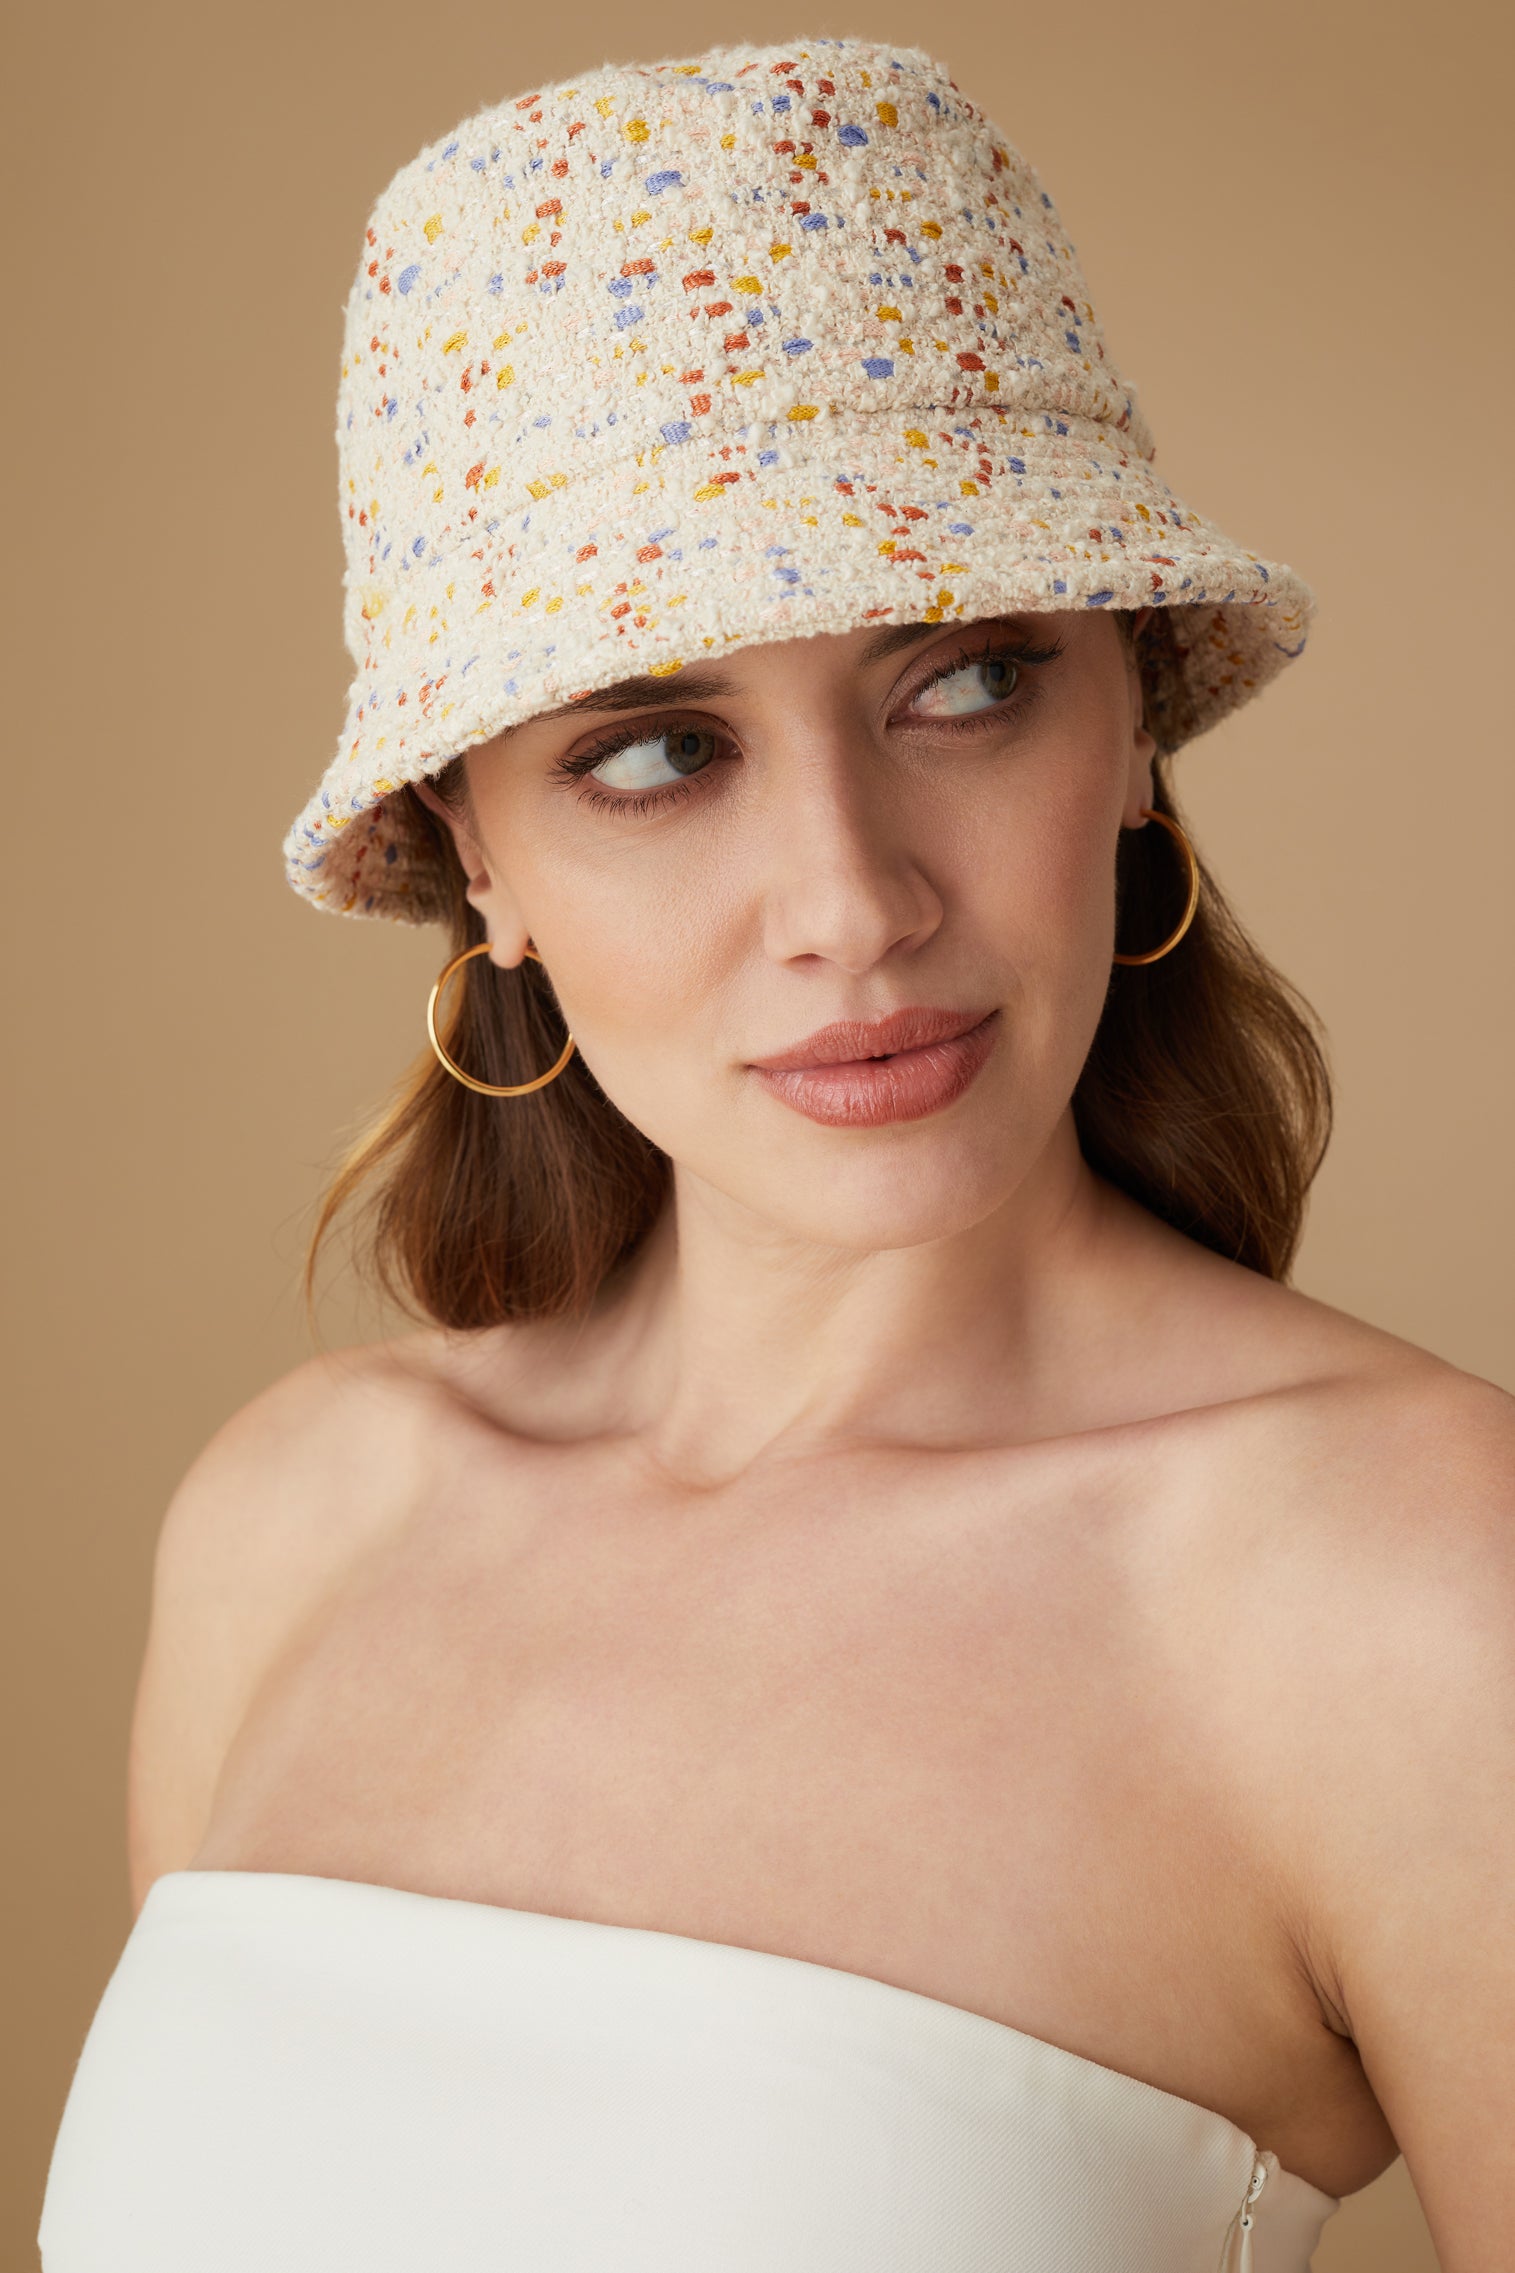 Rye Speckled Bucket Hat - Women’s Hats - Lock & Co. Hatters London UK